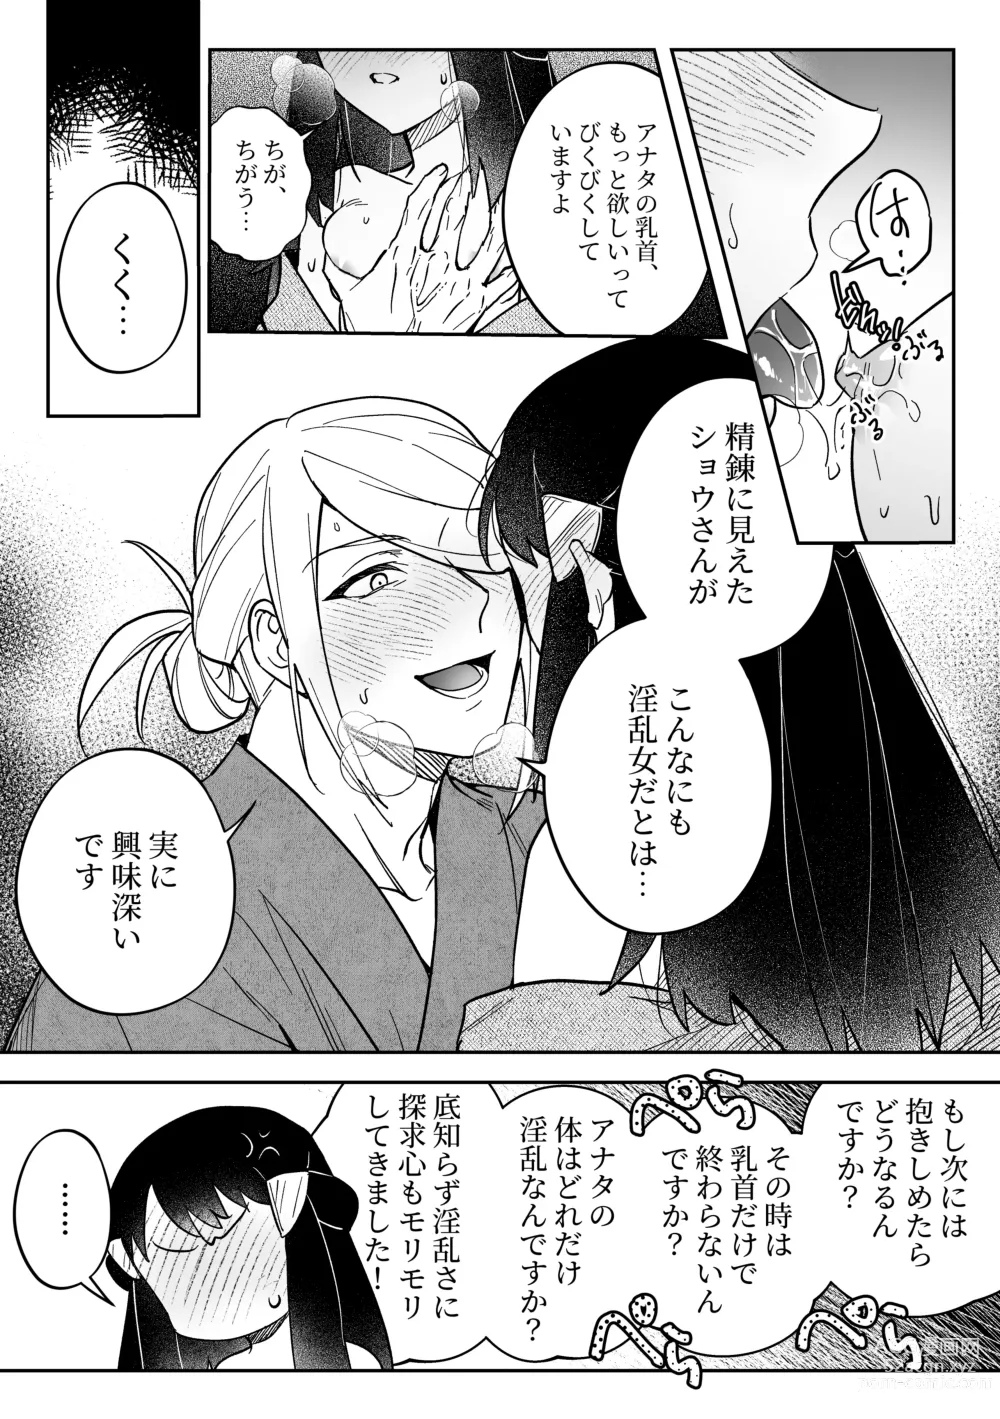 Page 6 of doujinshi Chikubi Karakau Volo Shou Manga